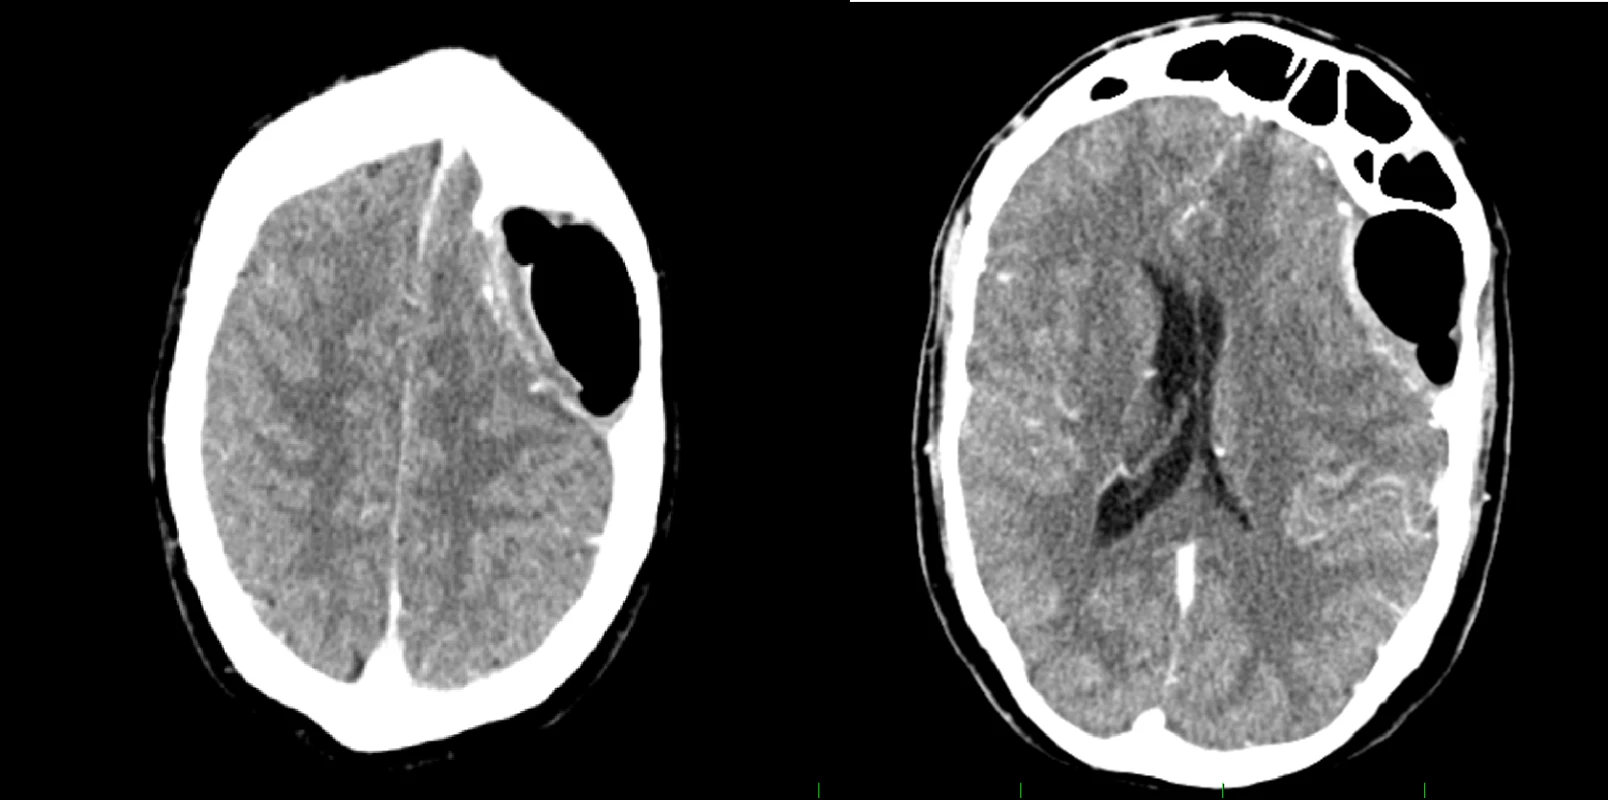 Postoperative CT scan with contrast medium showing regression of finding.<br>
Obr. 3. Pooperační CT vyšetření s kontrastní látkou ukazující regresi nálezu.

